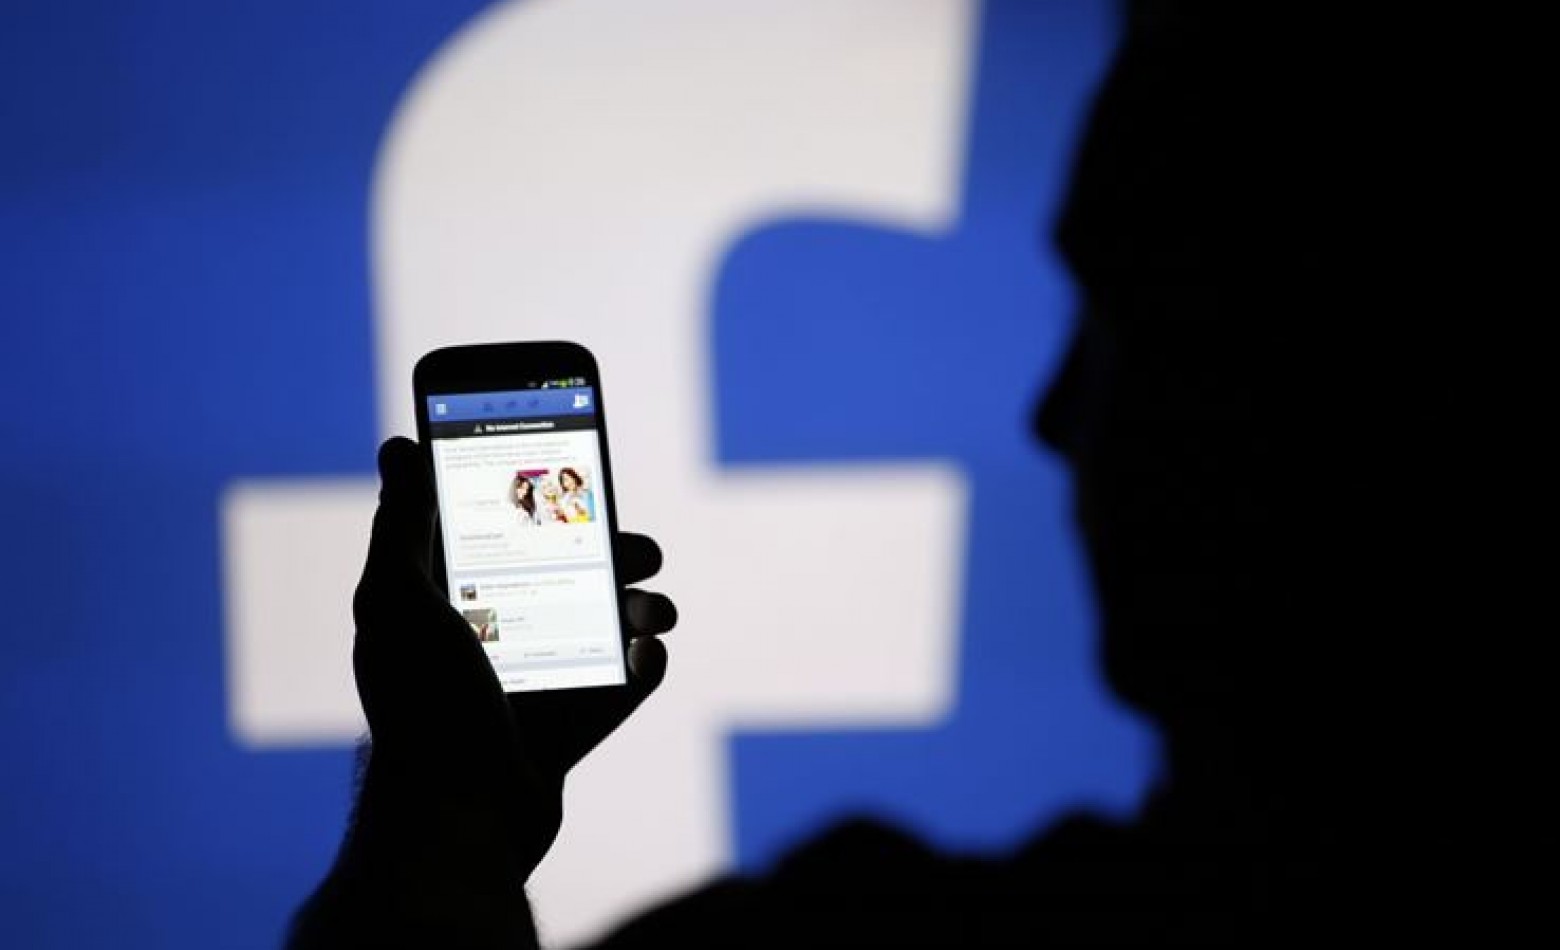 Receita de jogos no Facebook já apresenta sinais de queda